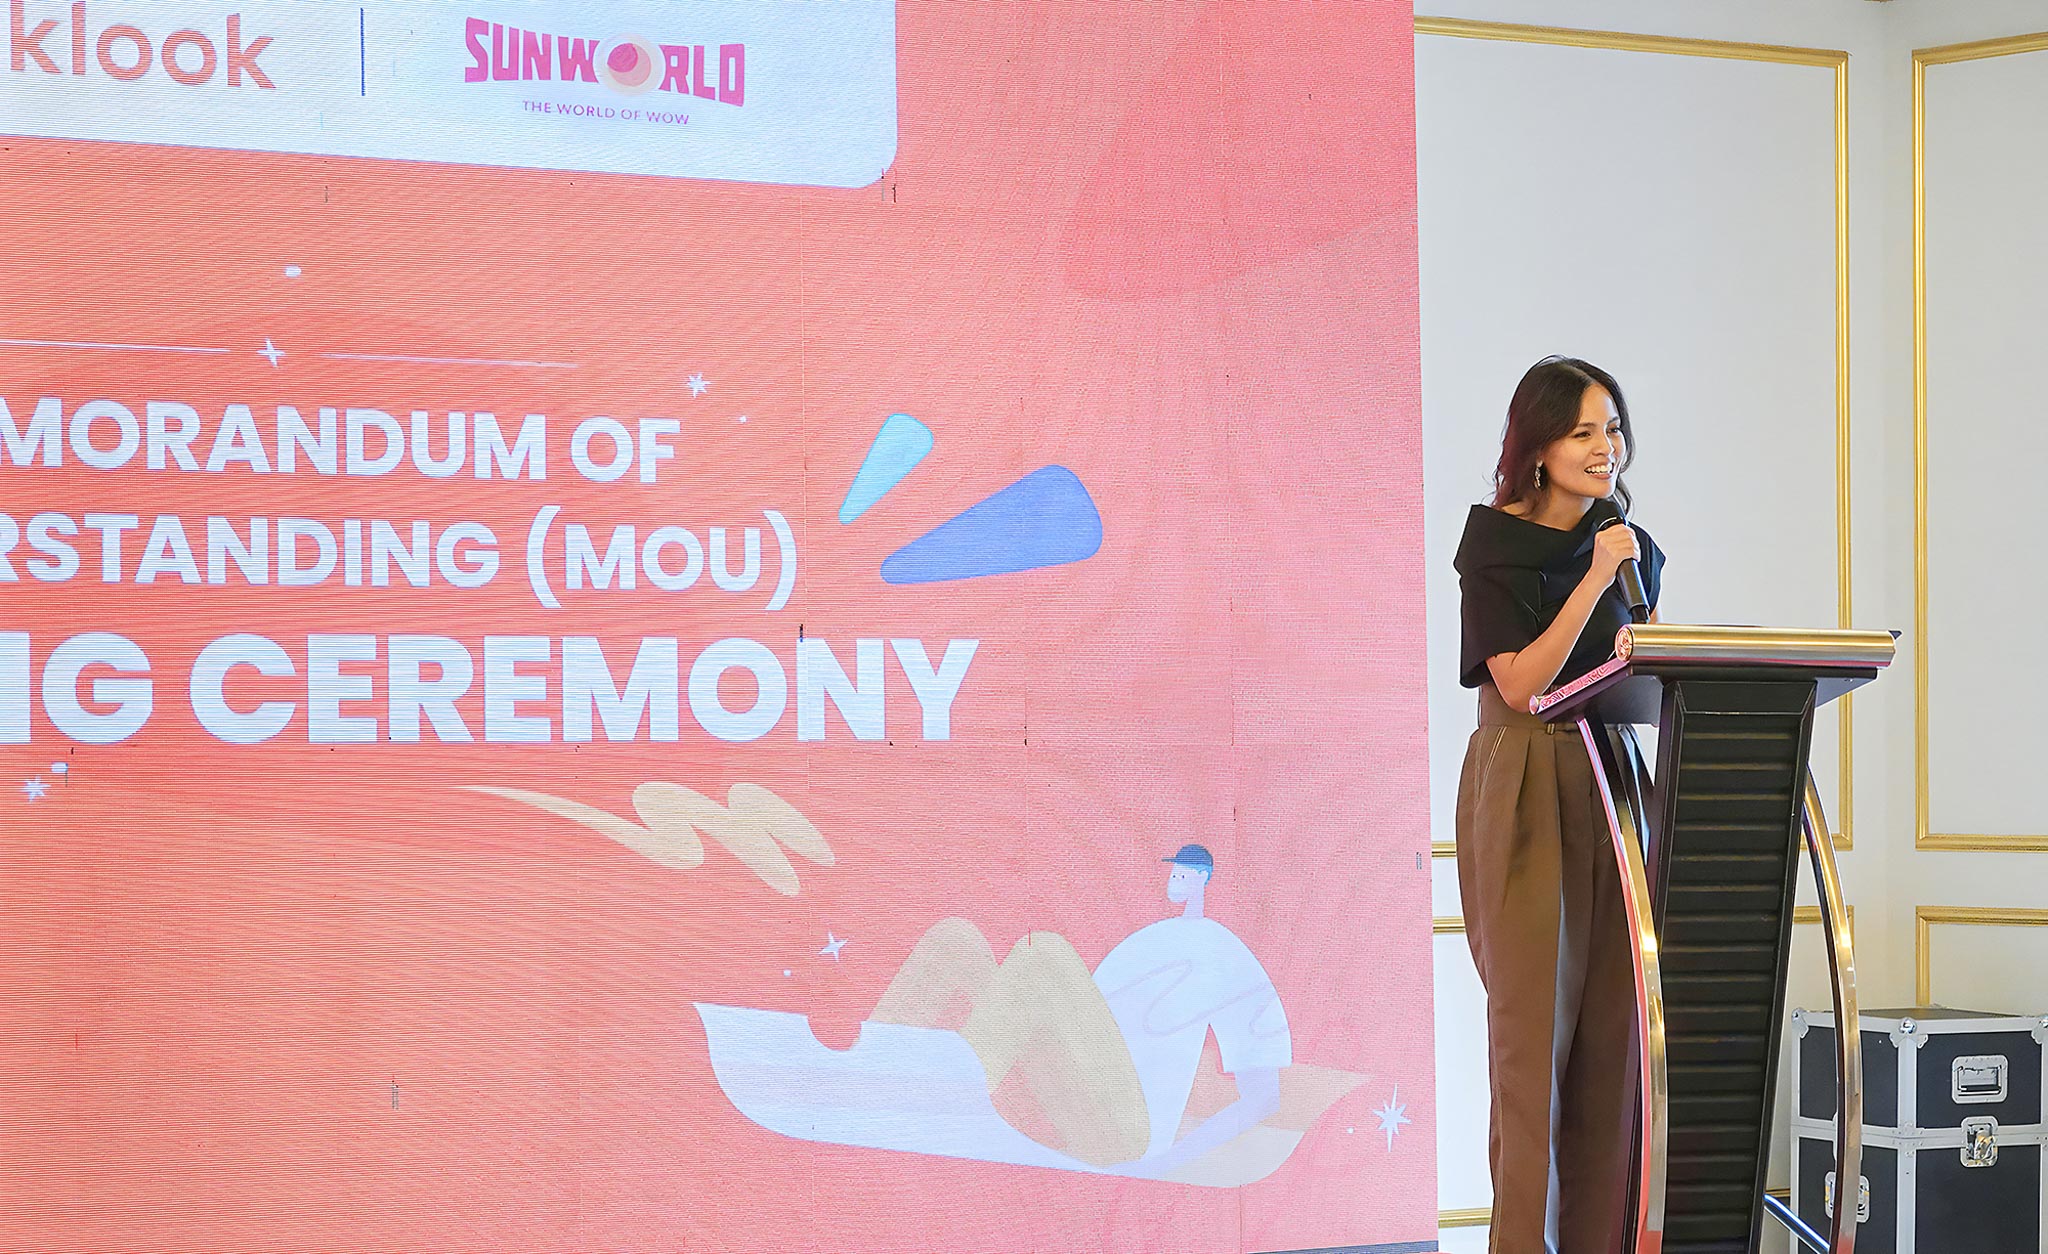 Klook hợp tác với Sun World đẩy mạnh quảng bá Việt Nam đến các thị trường quốc tế trọng điểm trong năm 2023